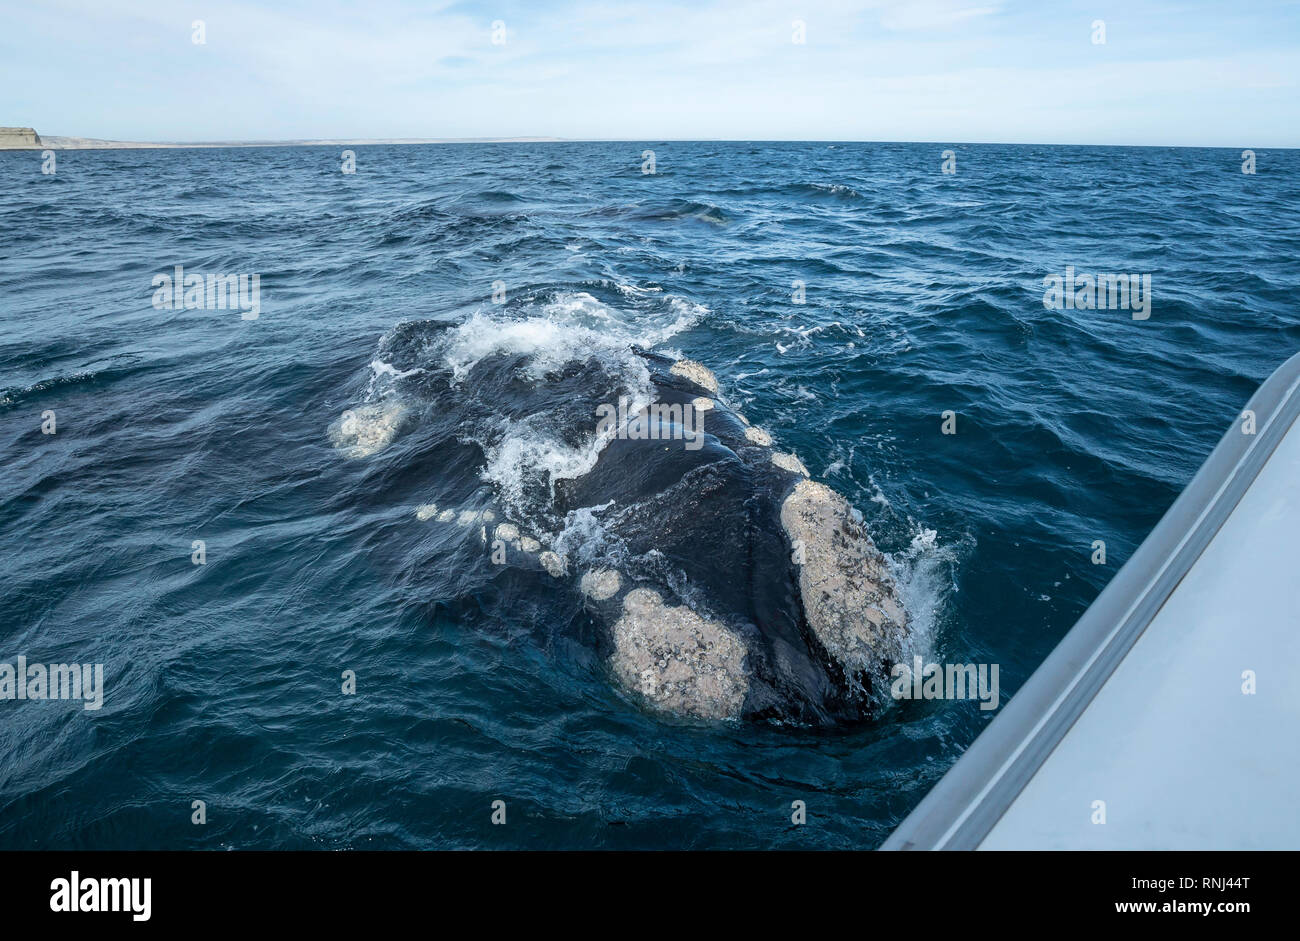 Neugierig männlichen Southern Right Whale kommt zu dem Boot, die Halbinsel Valdes, Argentinien. Stockfoto